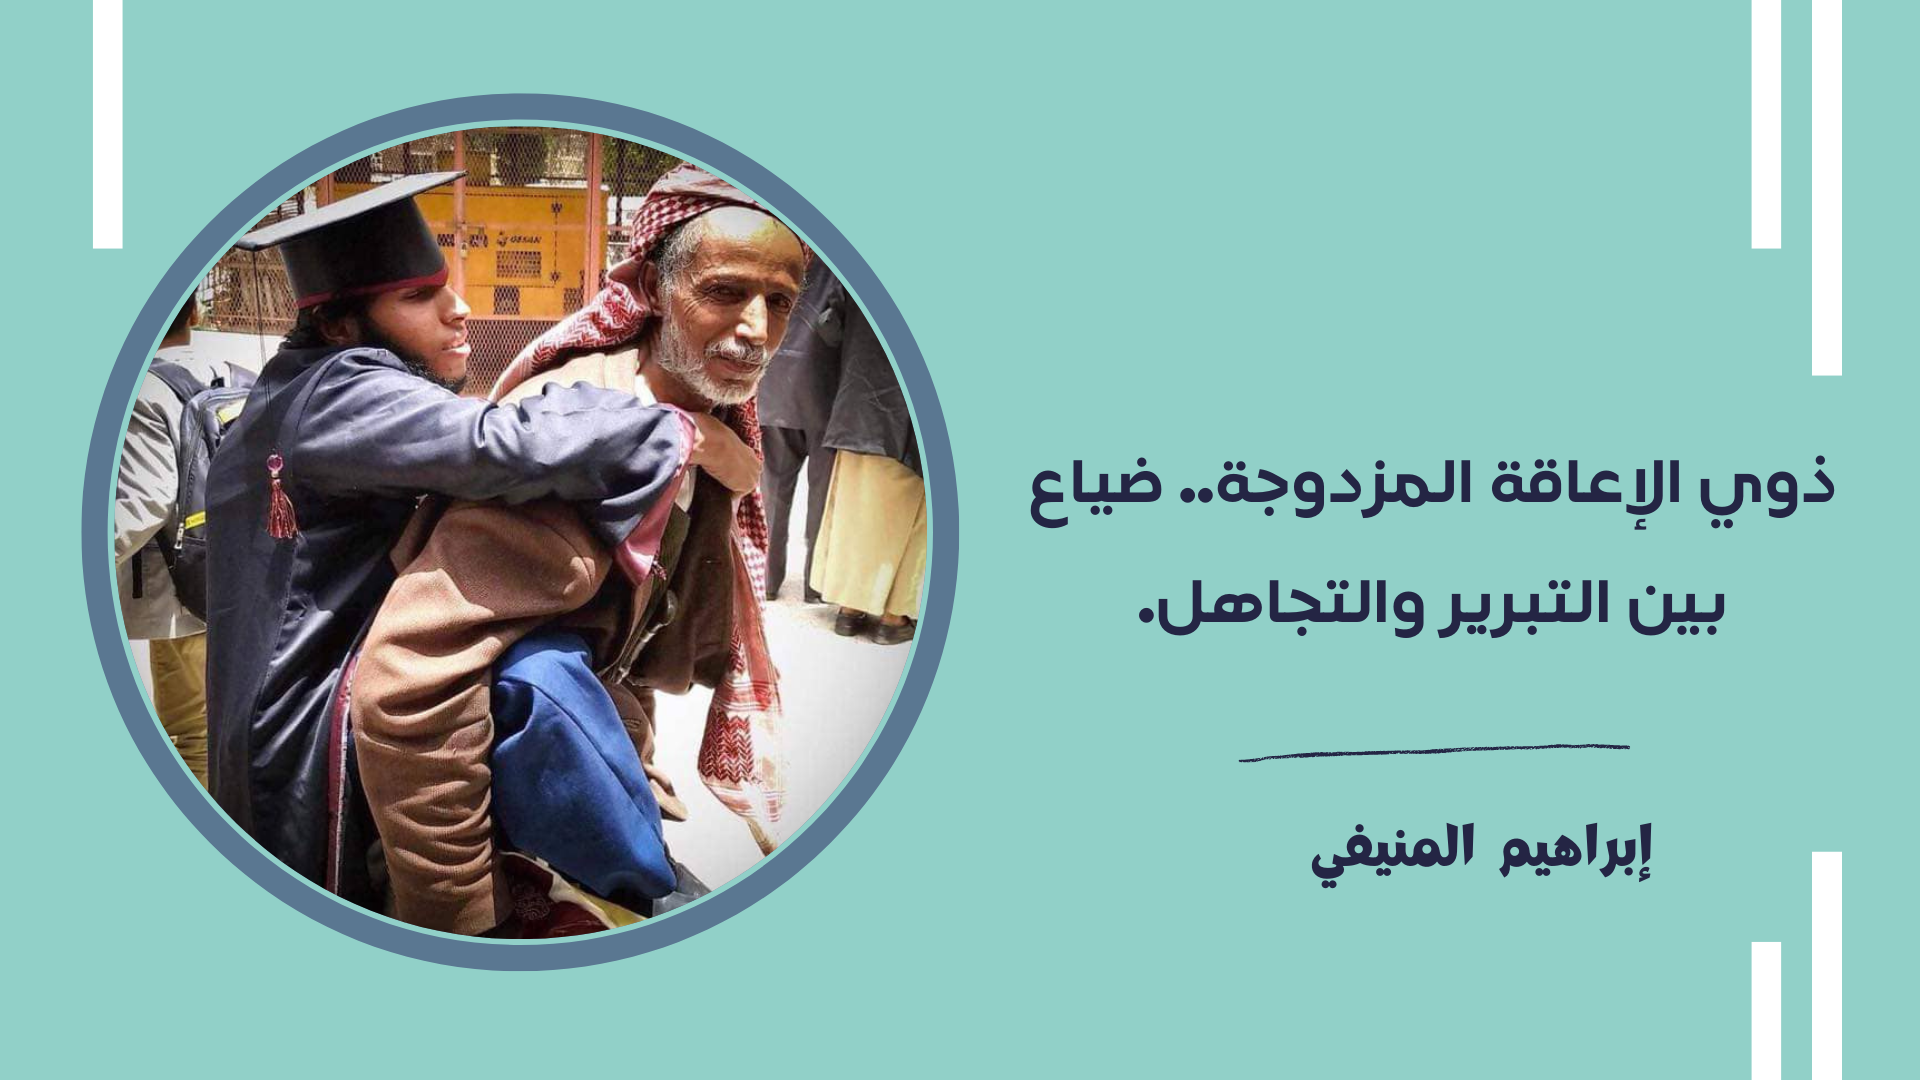 صورة محمد السباك وولده يحمله على ظهره في يوم تخرجه